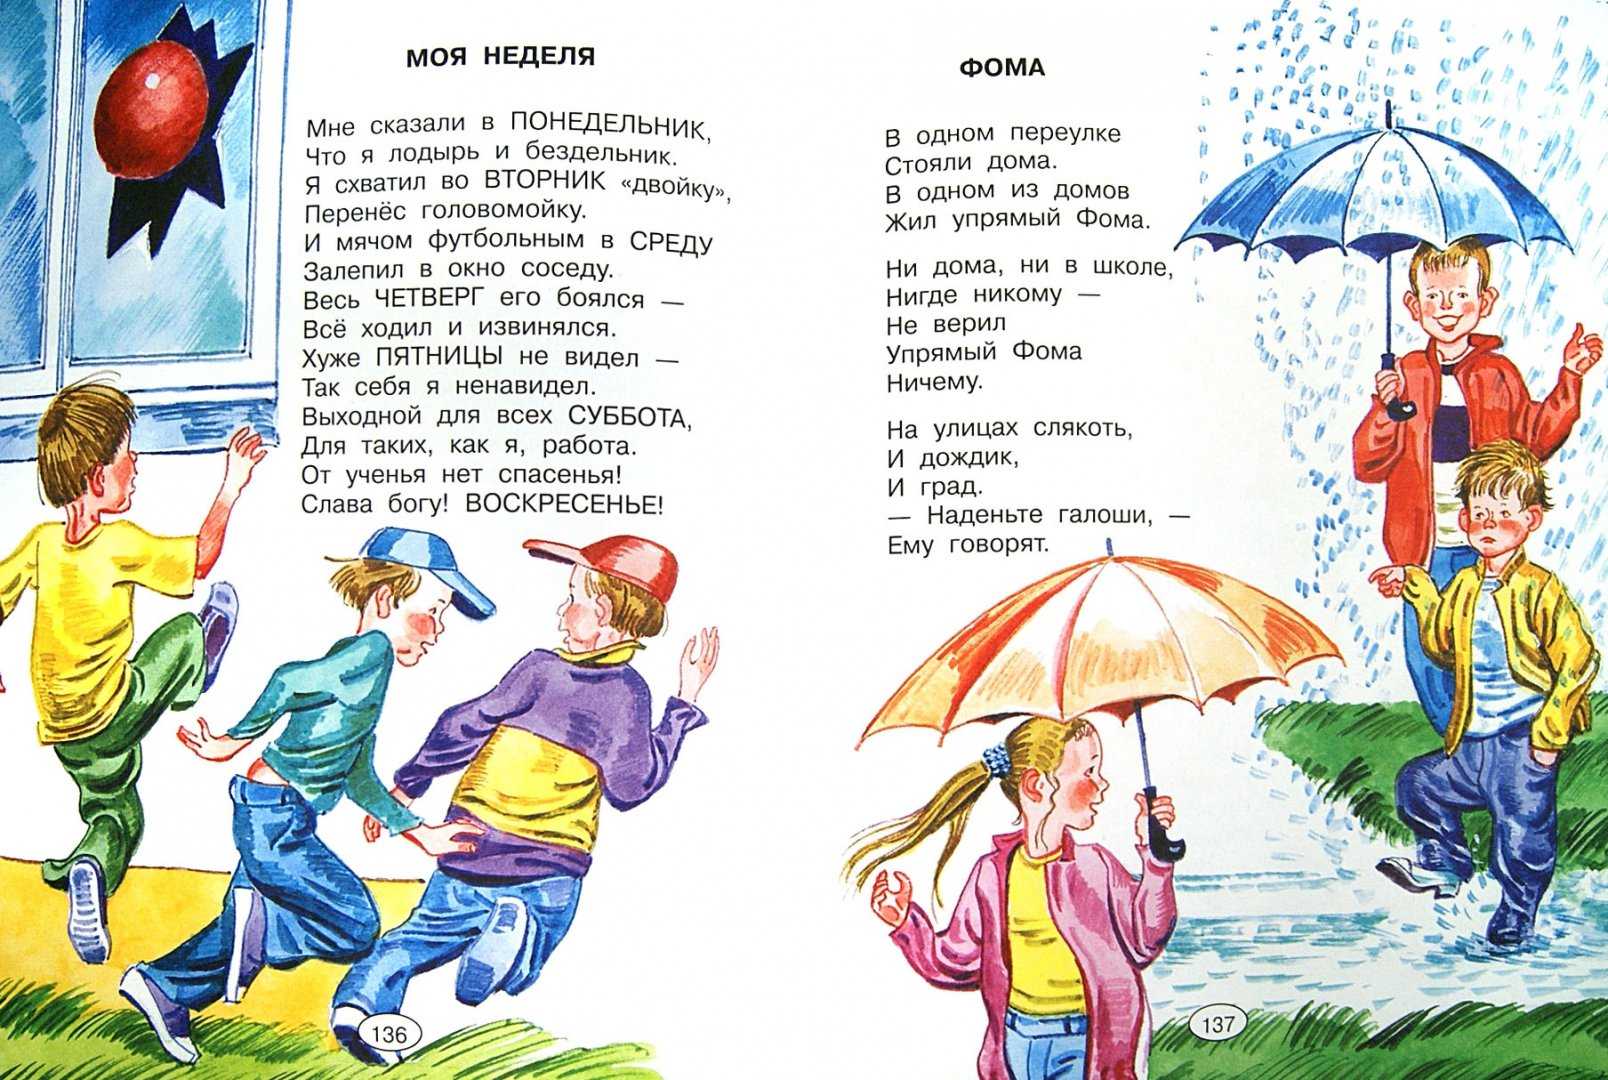 Чем интересны произведения михалкова для детей. какие произведения написал михалков сергей владимирович для детей — полный список с названиями и описаниями